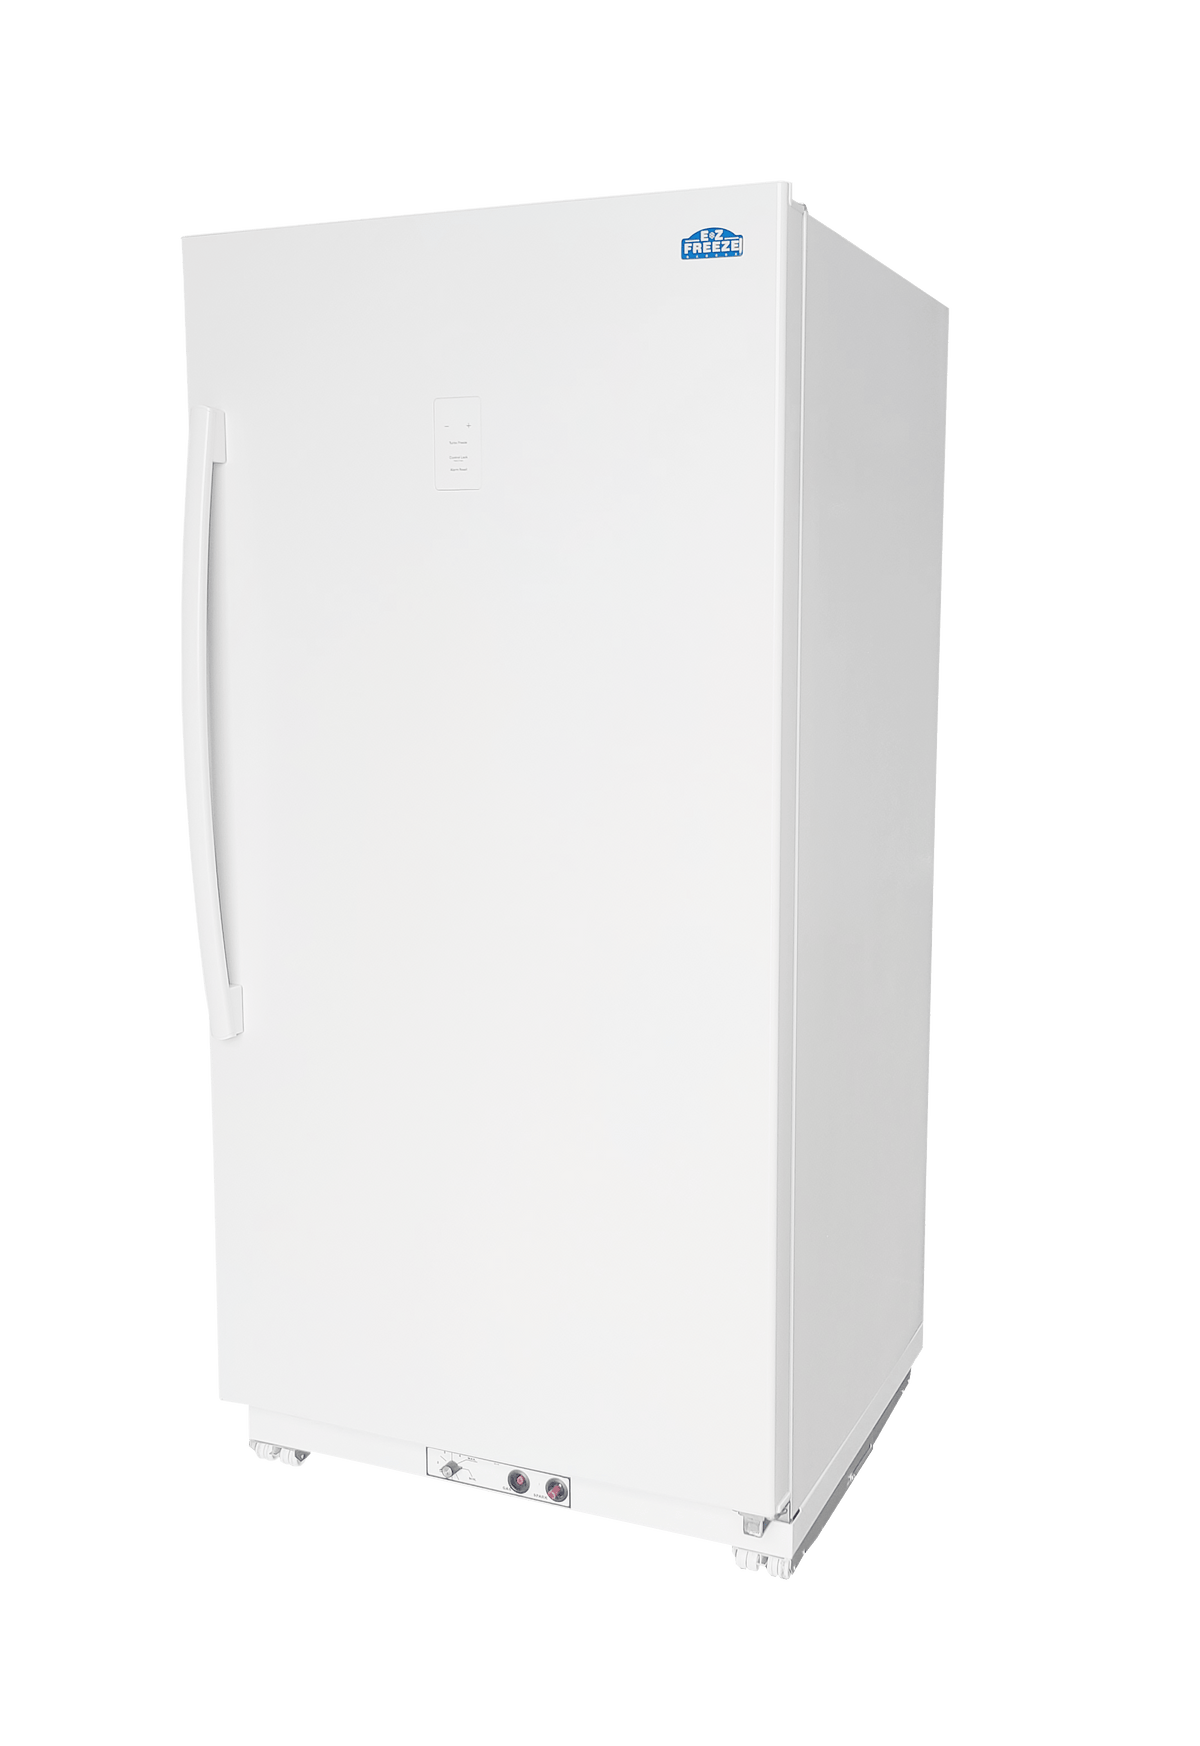 EZ Freeze Propane Refrigerator EZ Freeze EZ-18R 18 cu. ft. Propane All-Refrigerator (No Freezer Section) in White